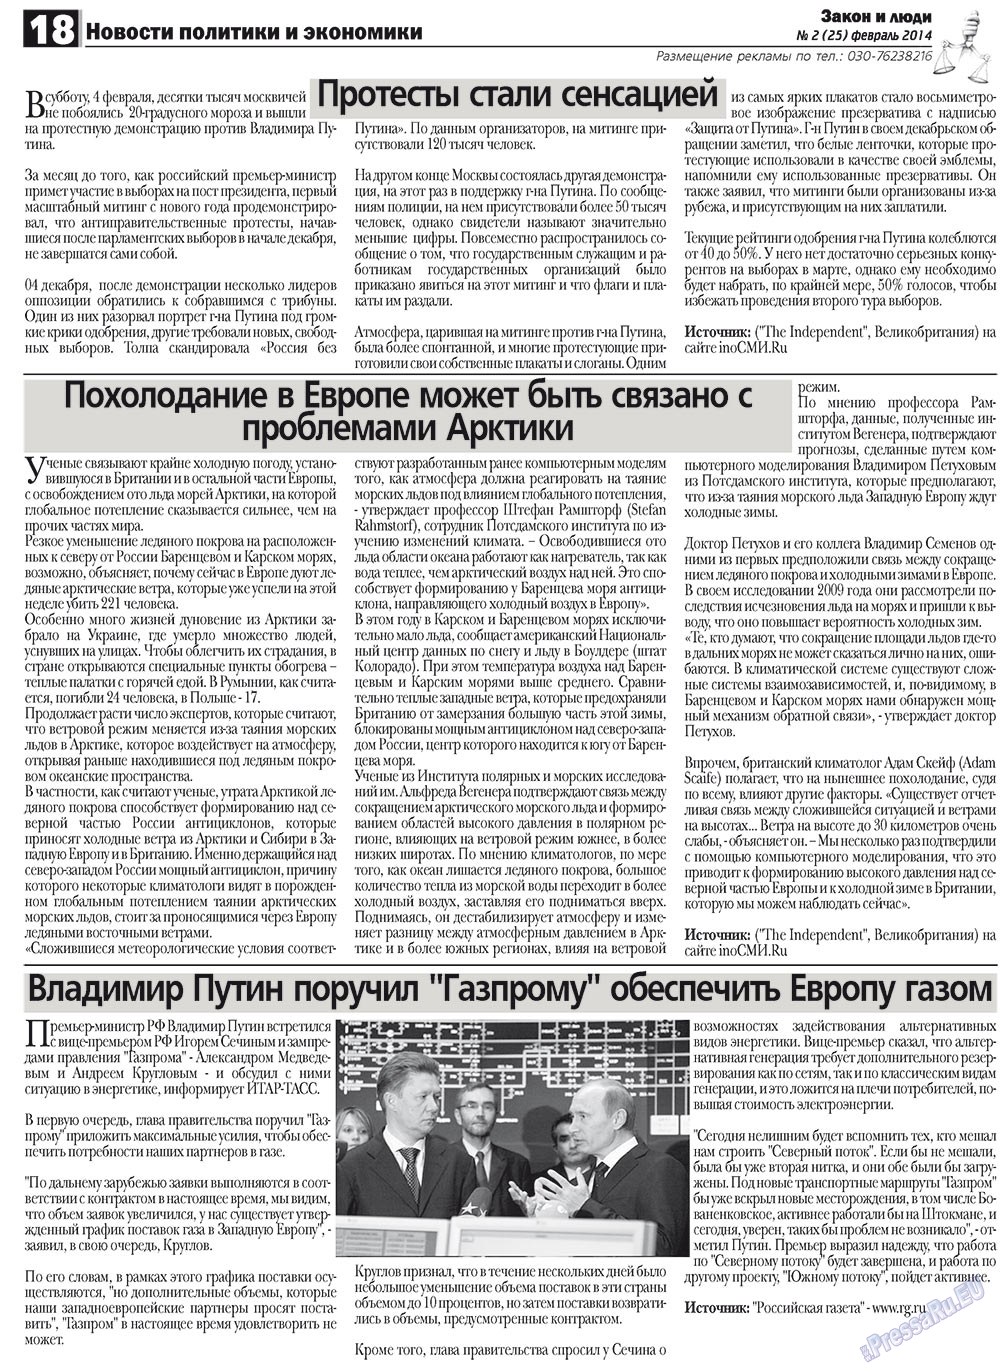 Закон и люди, газета. 2012 №2 стр.18